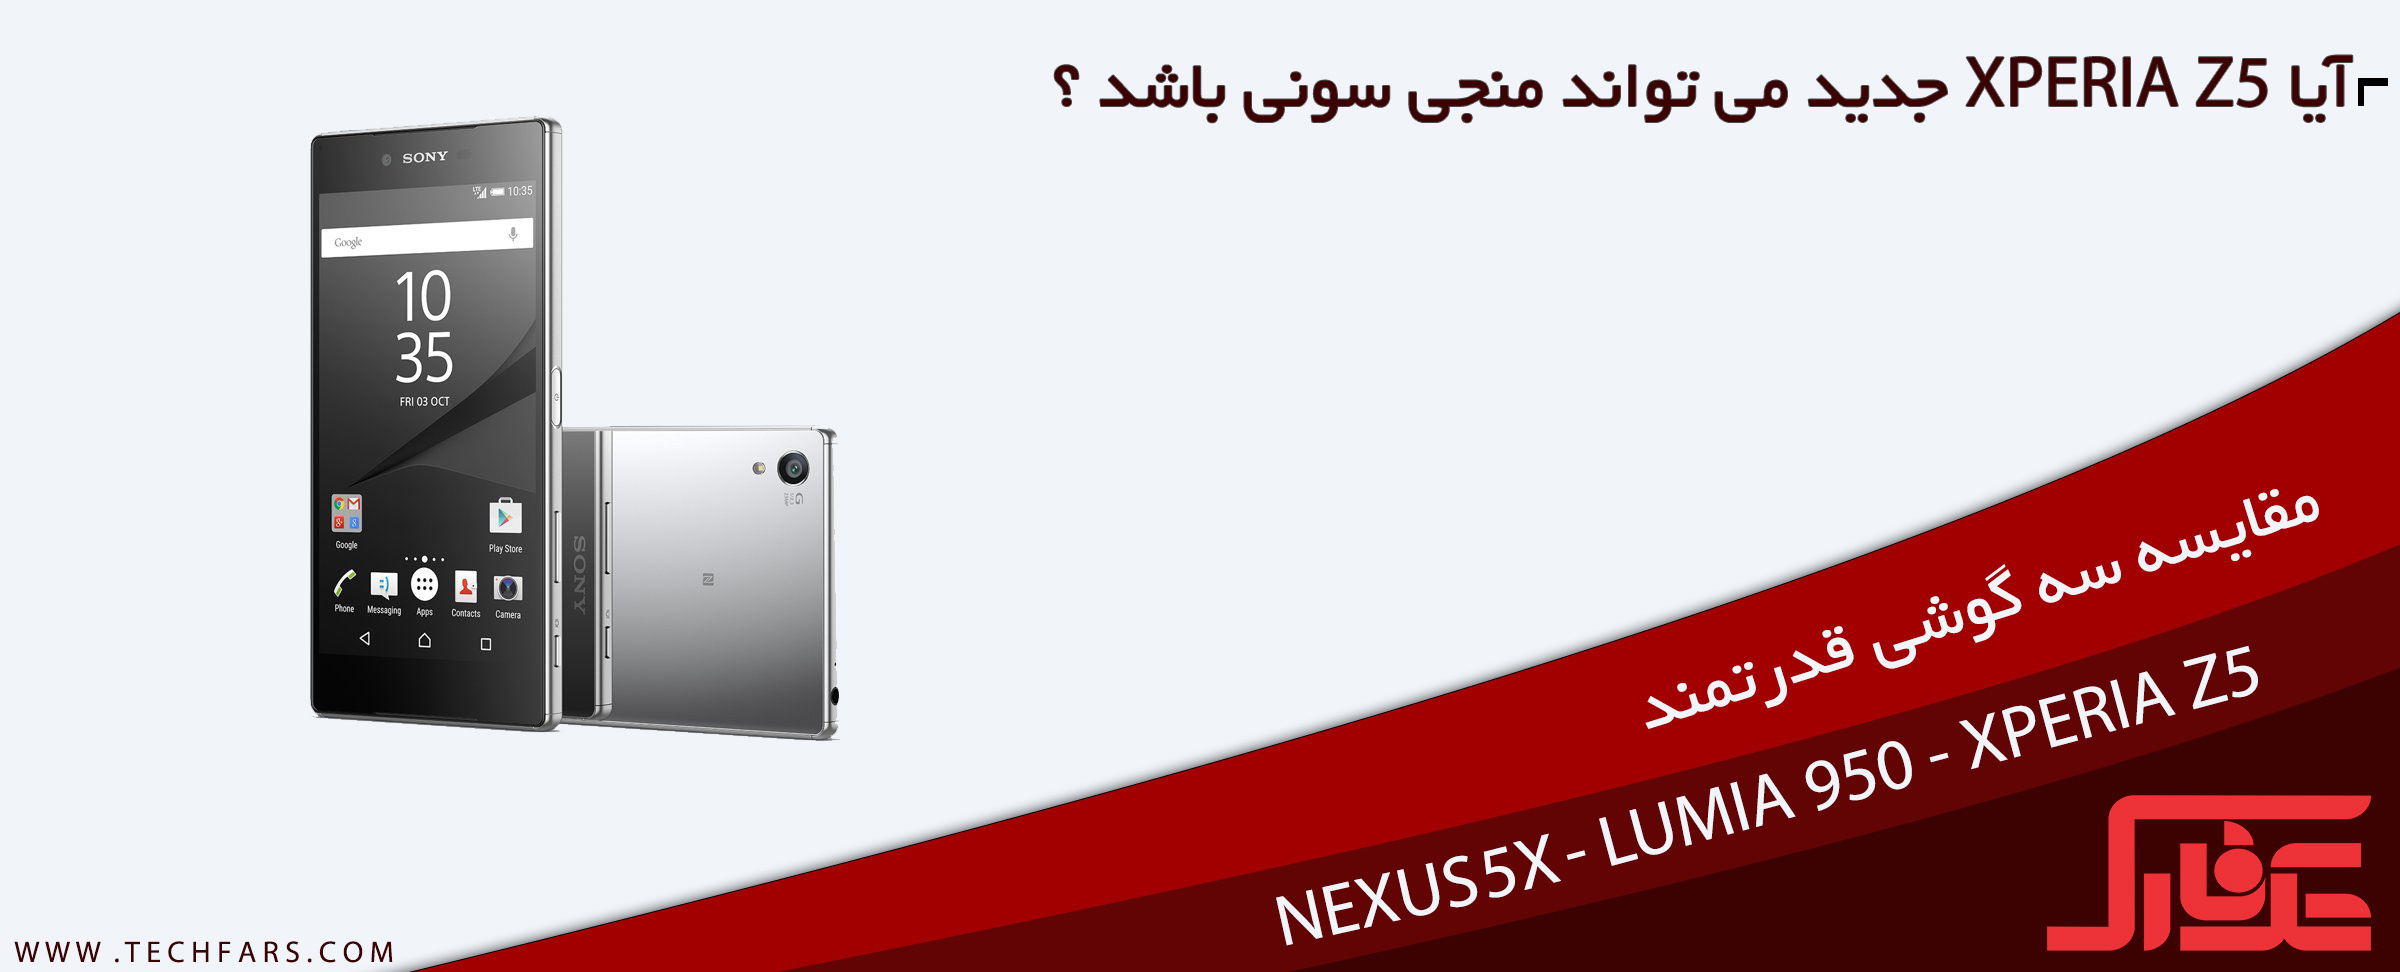 مقایسه گوشی های هوشمند Lumia 950 ،Google Nexus 5X ،Sony Xperia Z5 - تکفارس 